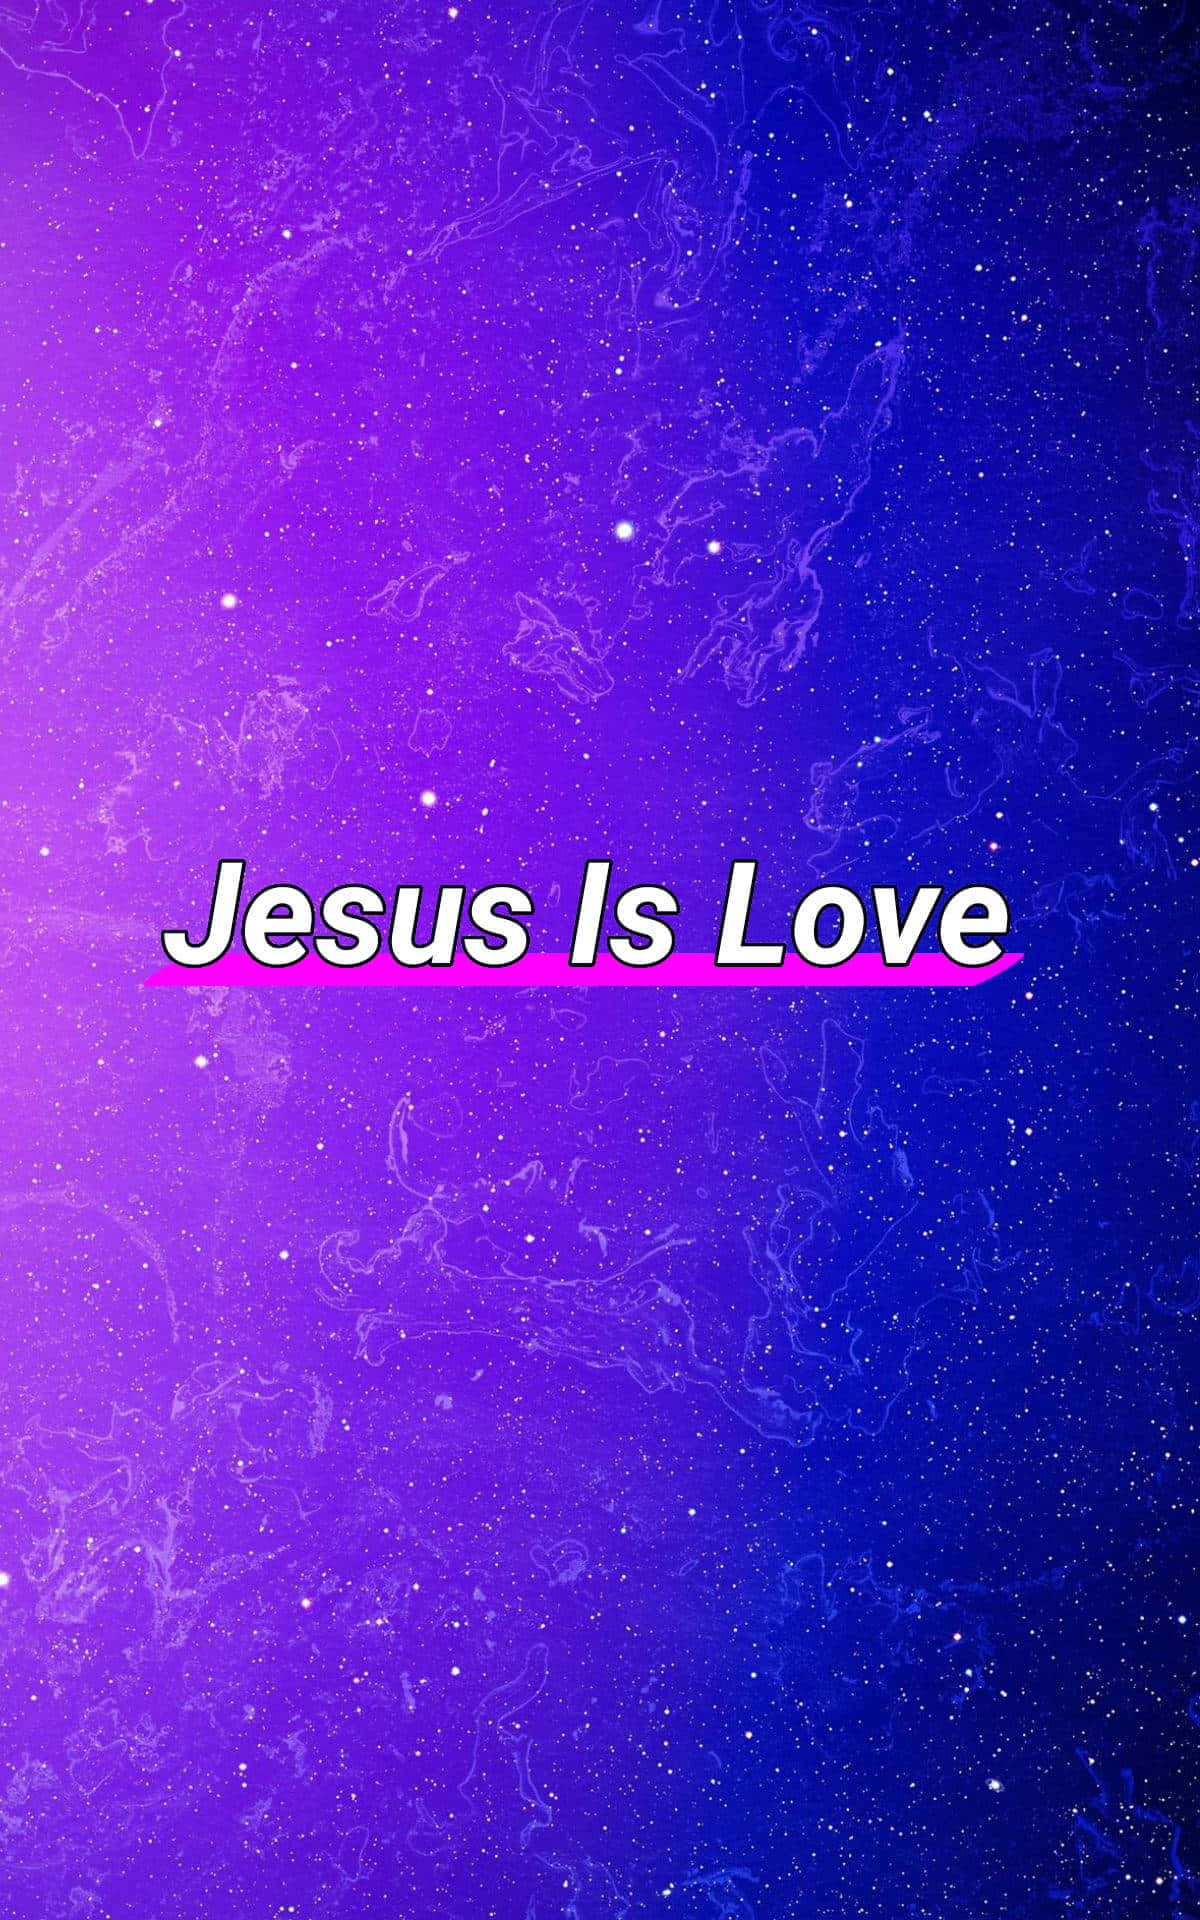 “God's love for us is infinite.” Wallpaper